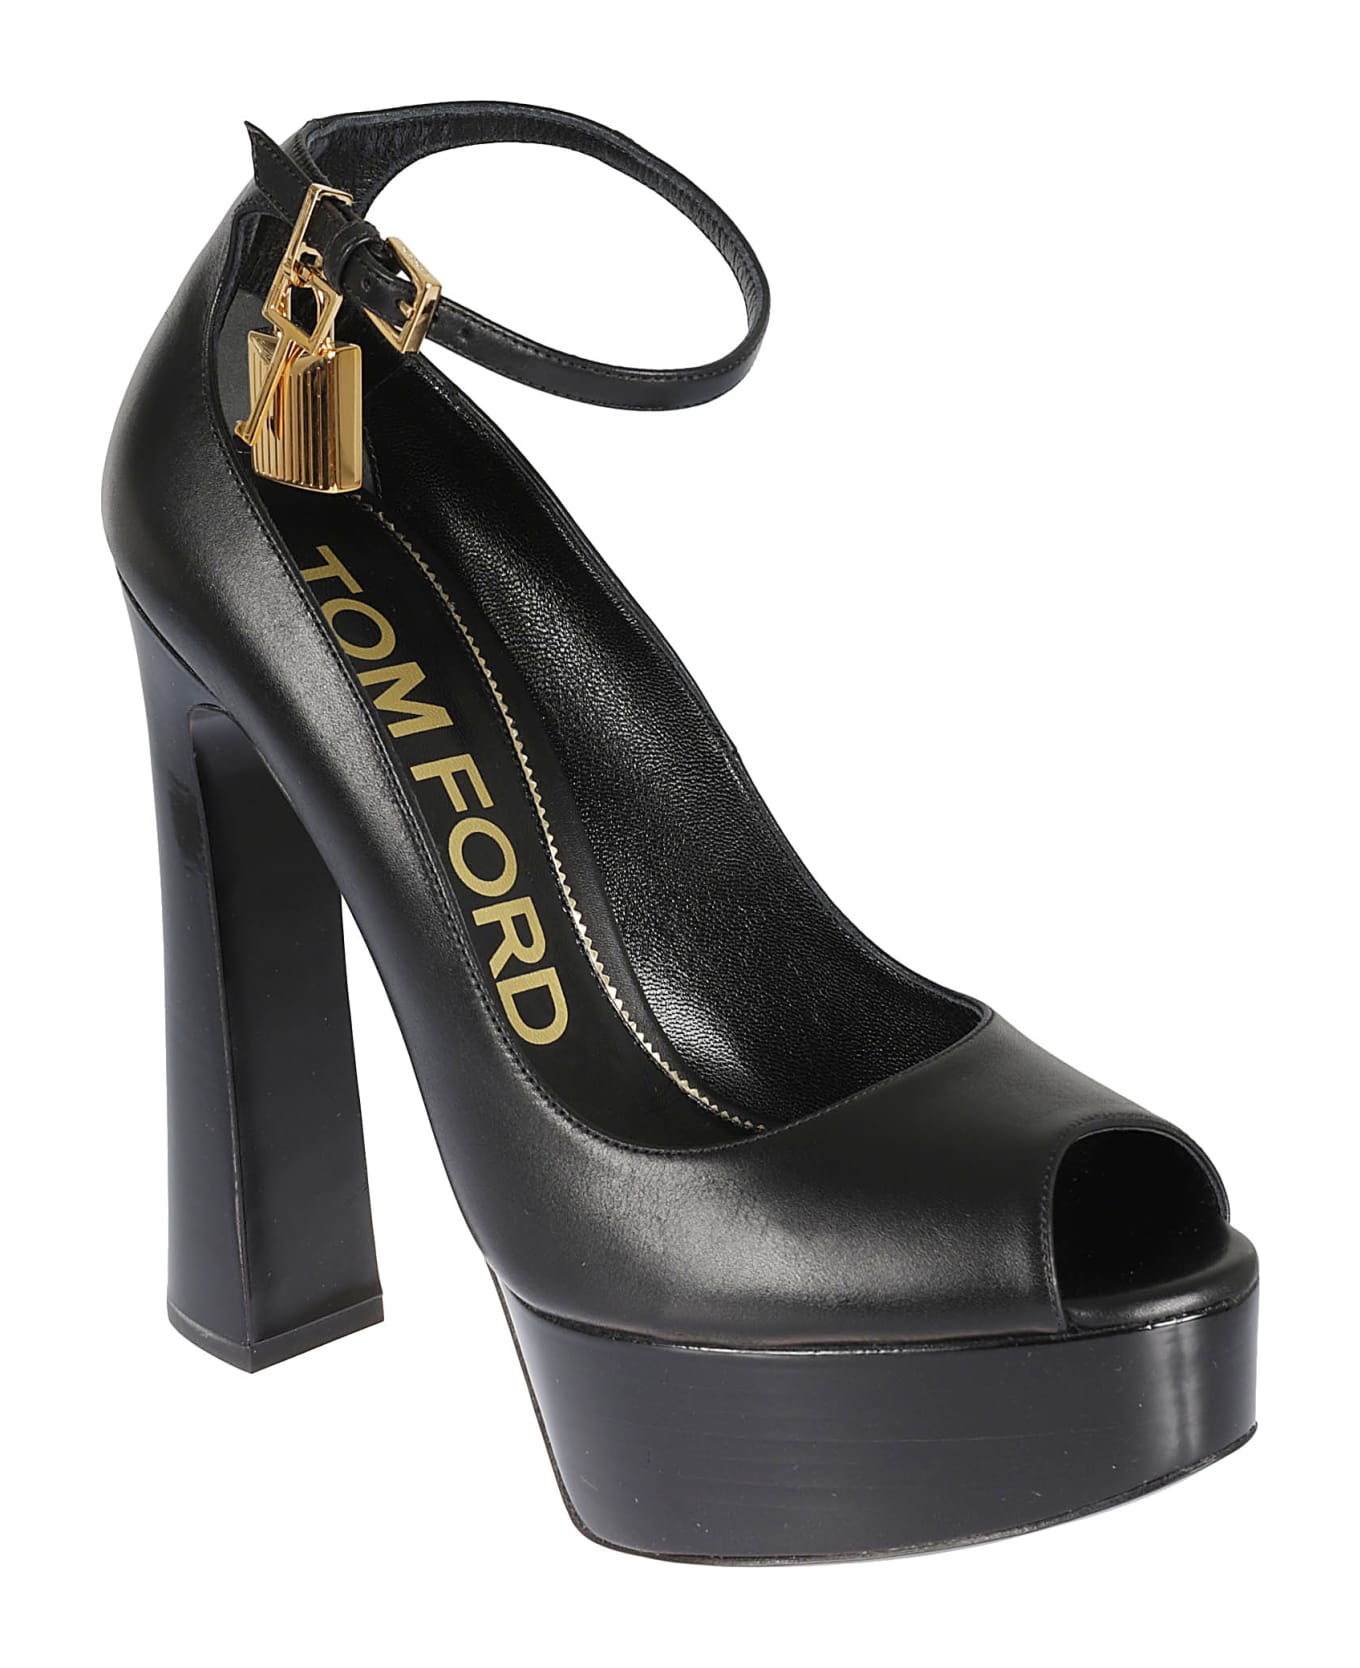 Tom Ford Padlock Embellished Ankle Strap Sandals - Black